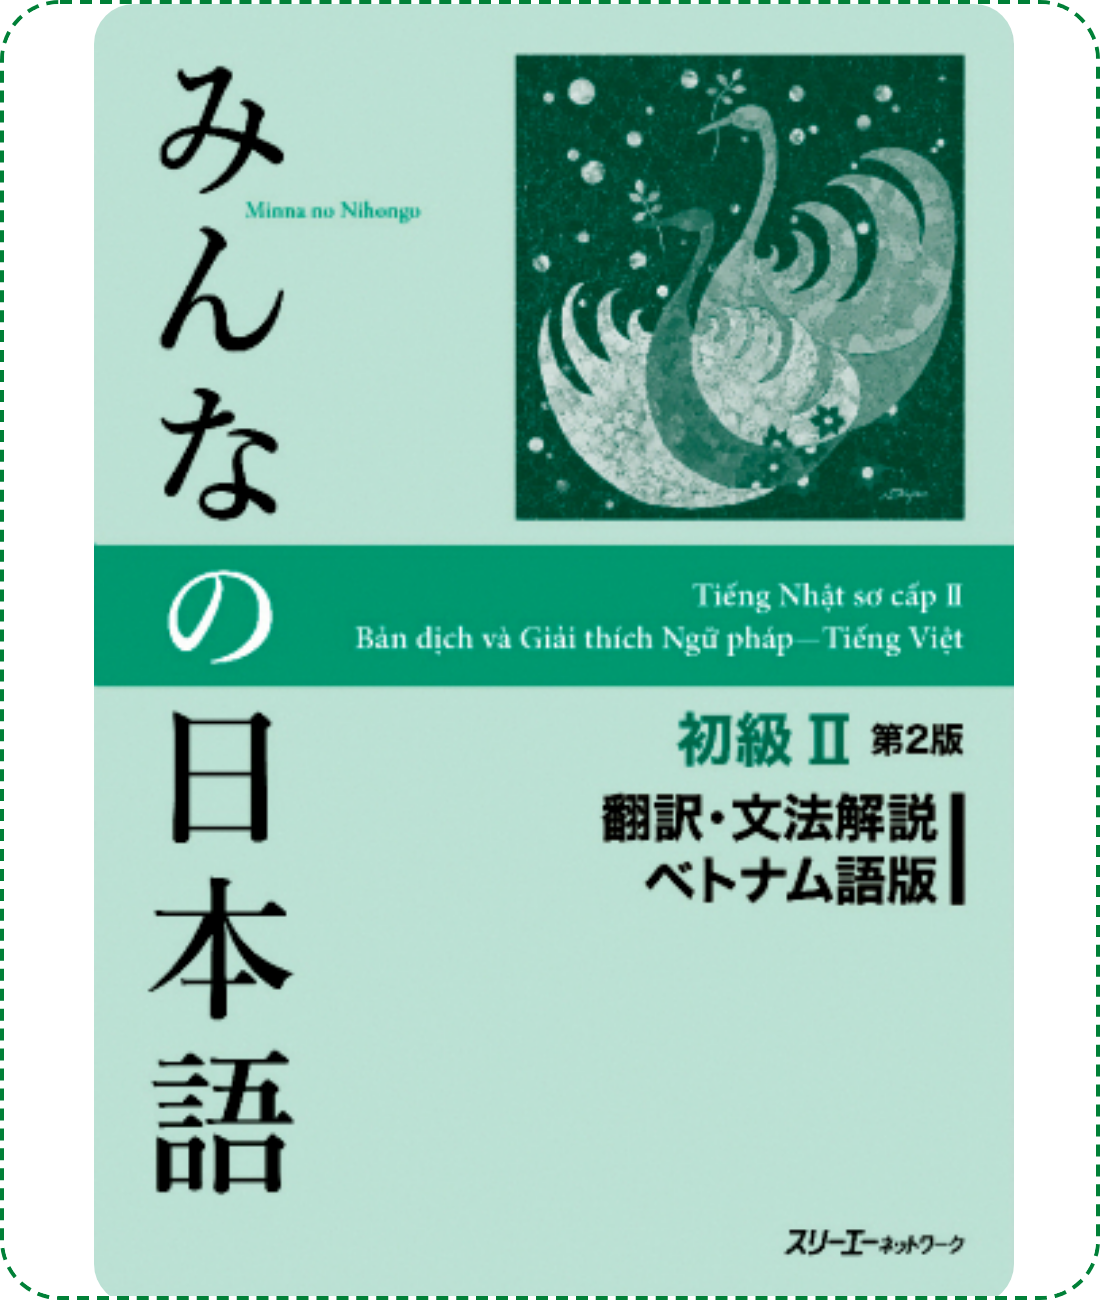 Giáo trình Minna No Nihongo Sơ Cấp 2 – Bản dịch và giải thích ngữ pháp (Bản mới) | みんなの日本語 初級〈2〉翻訳・文法解説 ベトナム語版